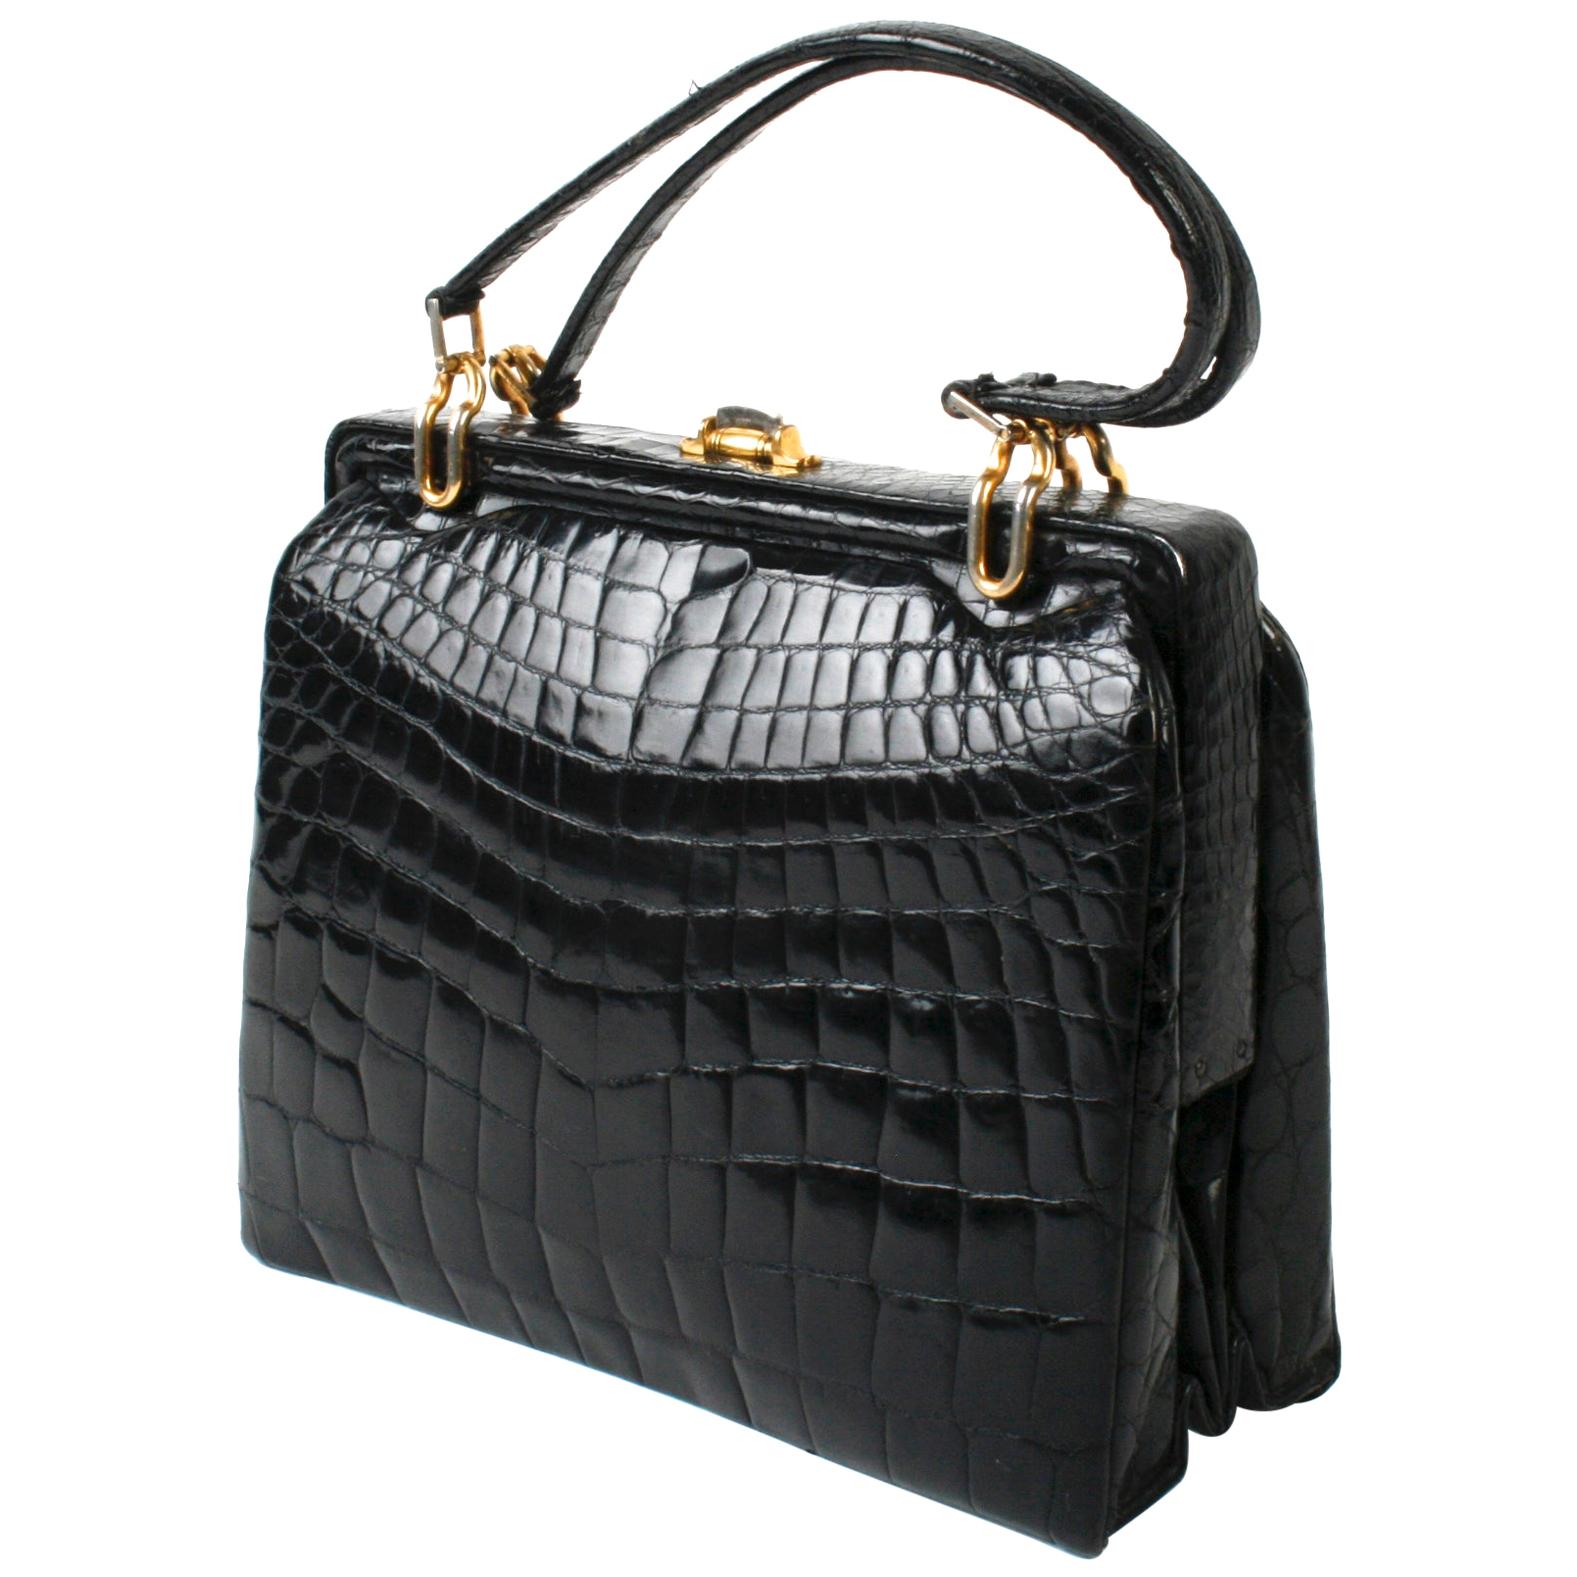 Black Alligator Handbag with Gold Tone Link Hardware For Sale